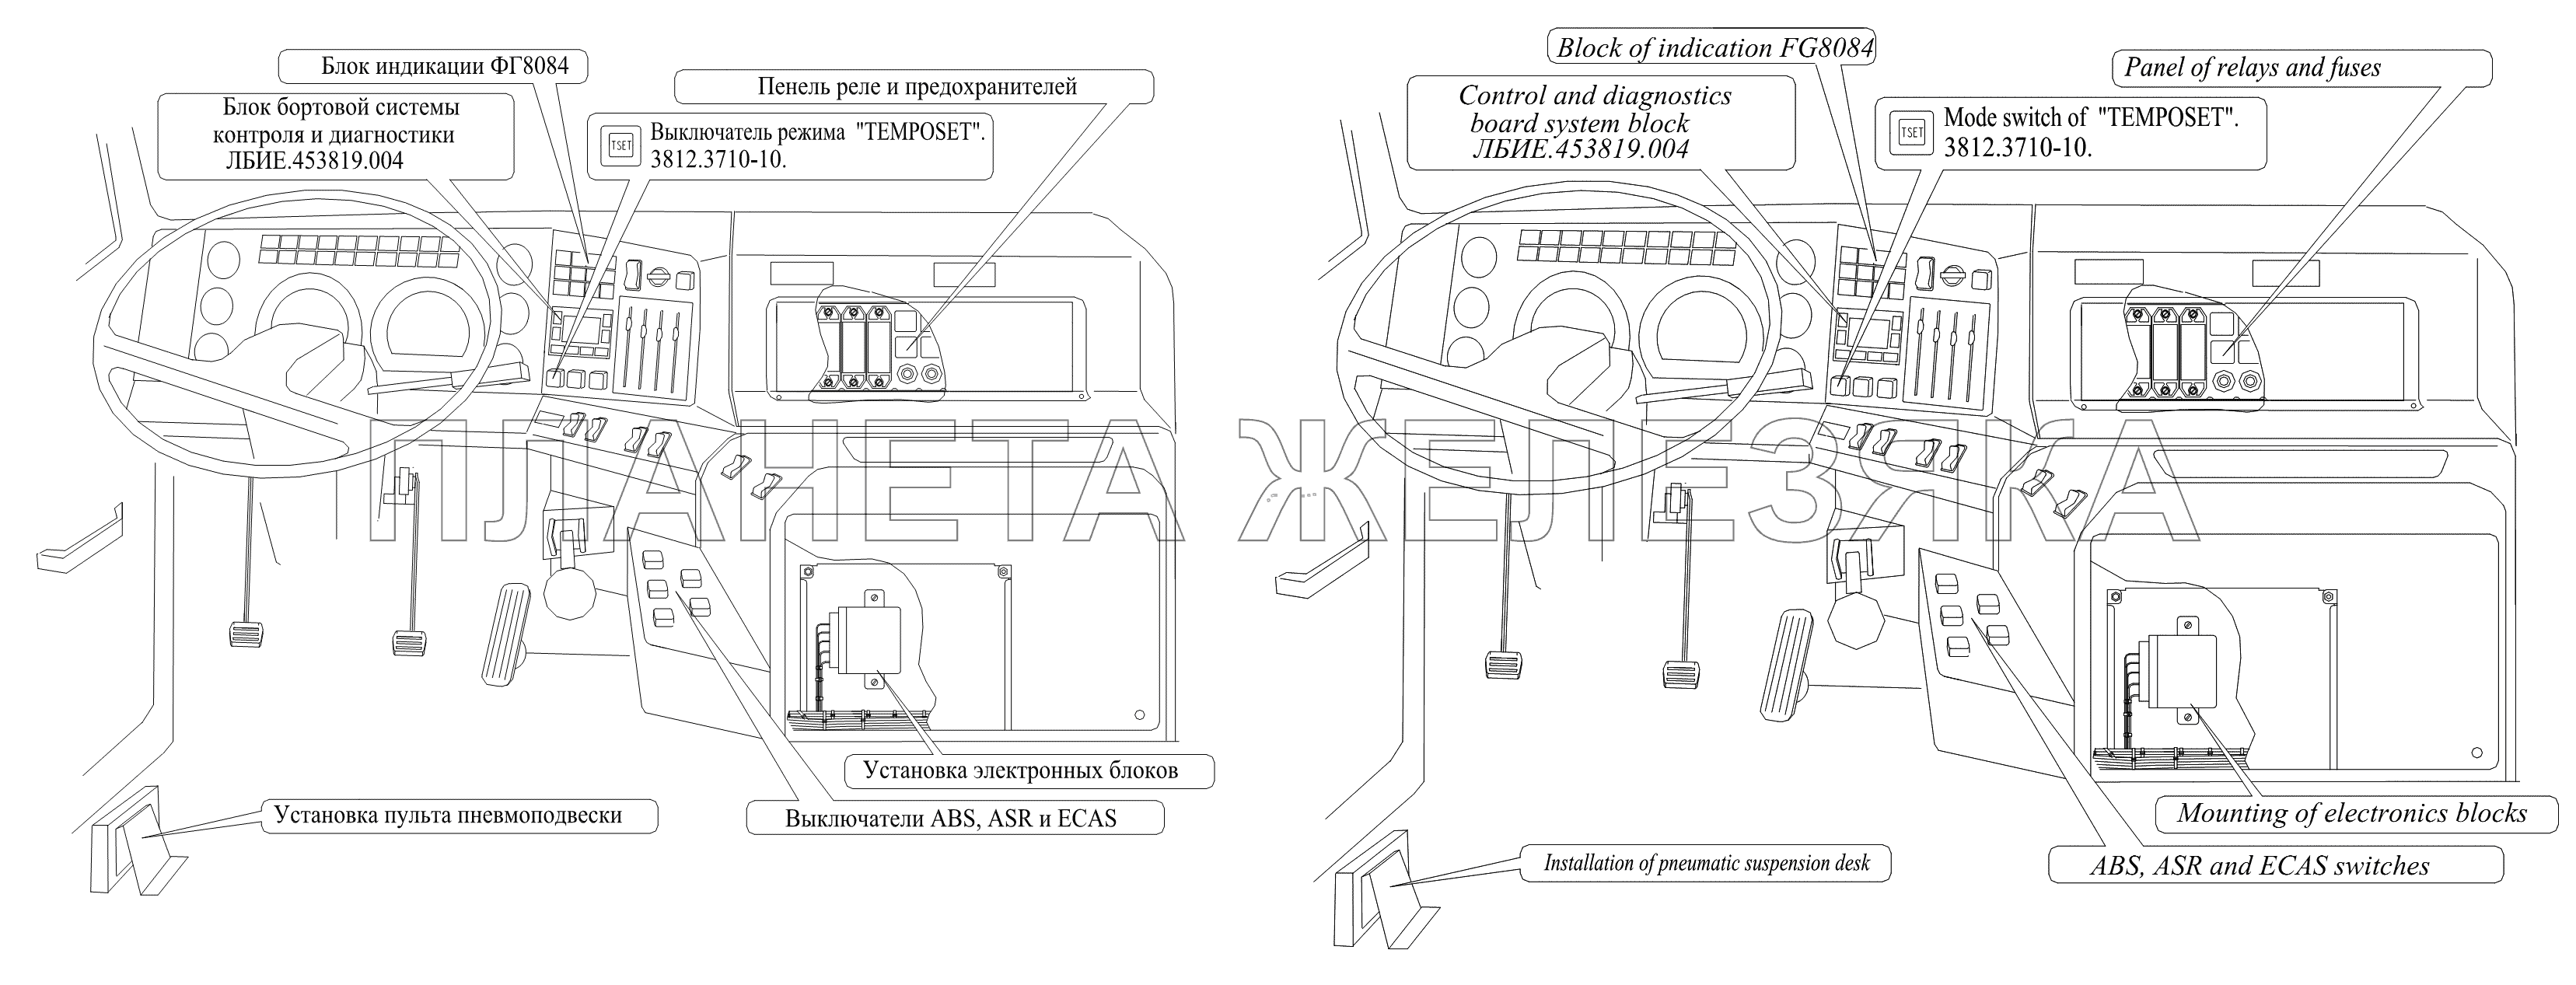 Расположение элементов электронных систем в кабине автомобилей семейства МАЗ - 5440A8/6430A8 МАЗ-6430A8 (5440A8, 5440A5)